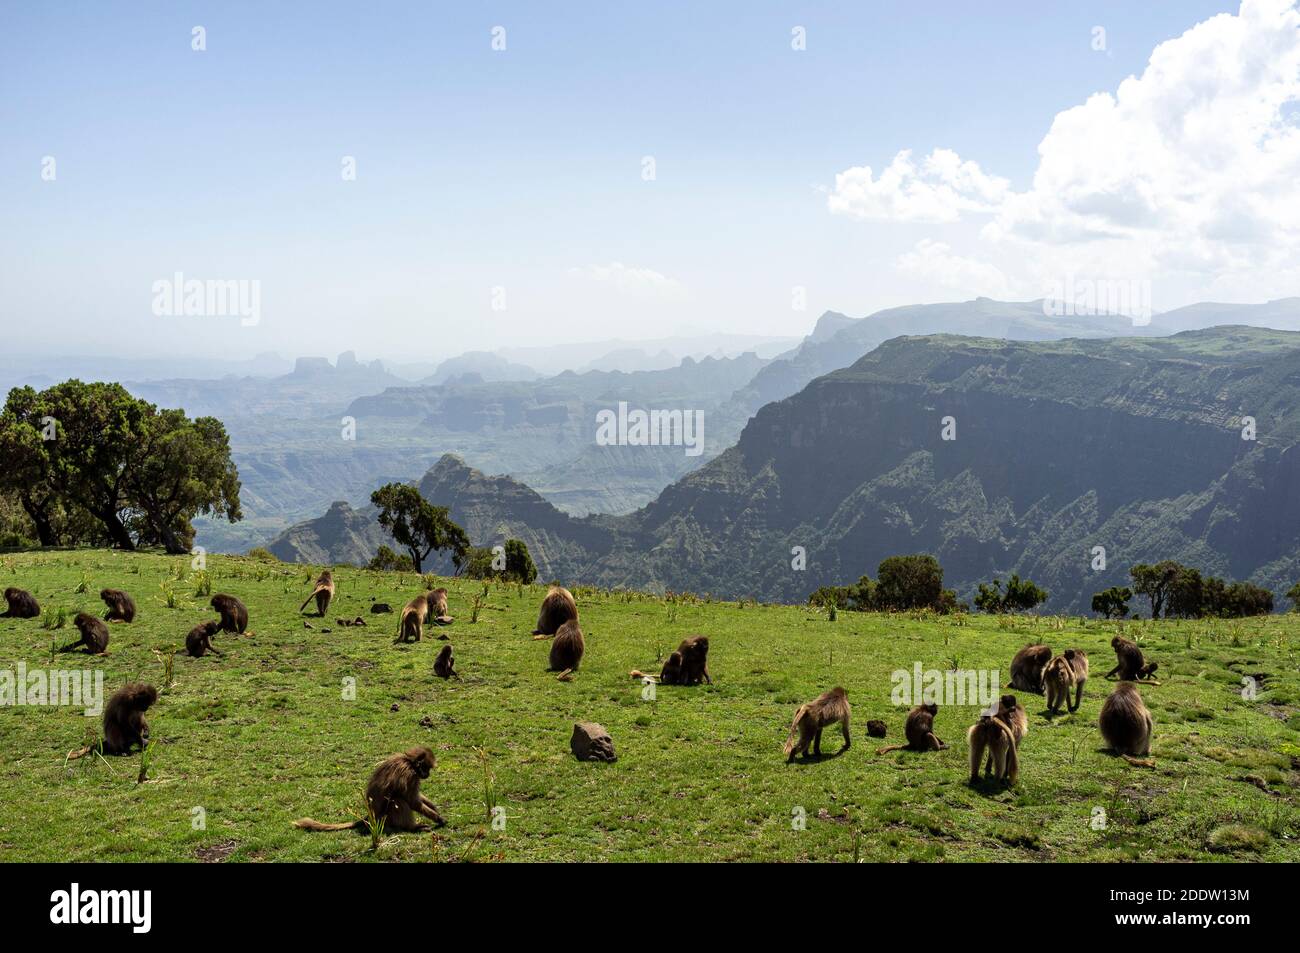 Parc national des montagnes de Semien ou Simien à Amhara dans le Hautes terres éthiopiennes en Éthiopie Banque D'Images